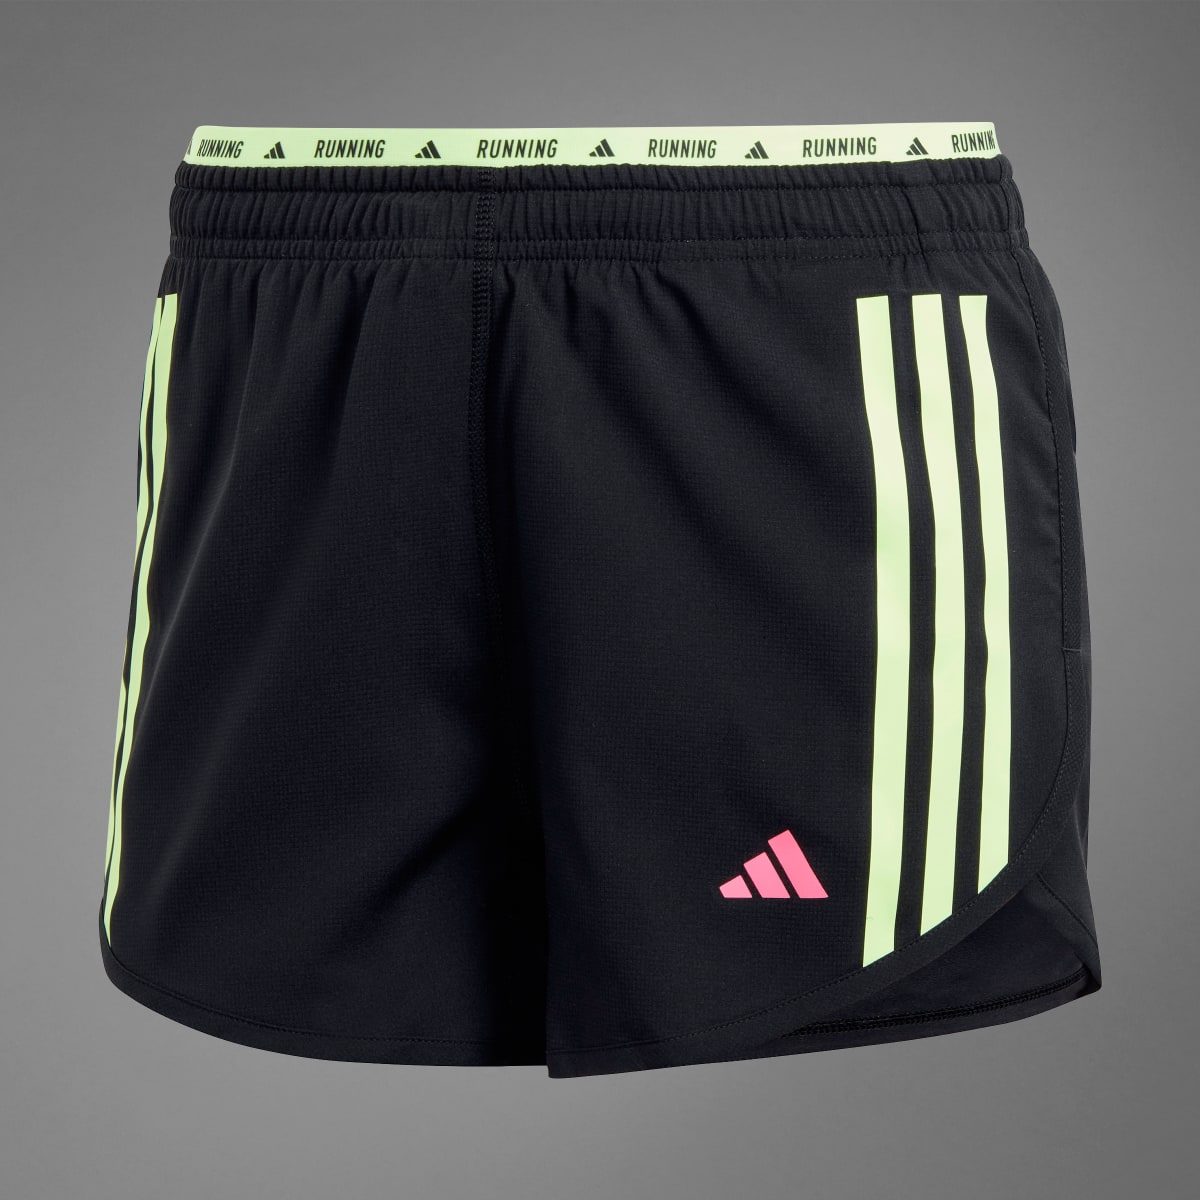 Adidas Own the Run 3-Stripes Shorts. 9